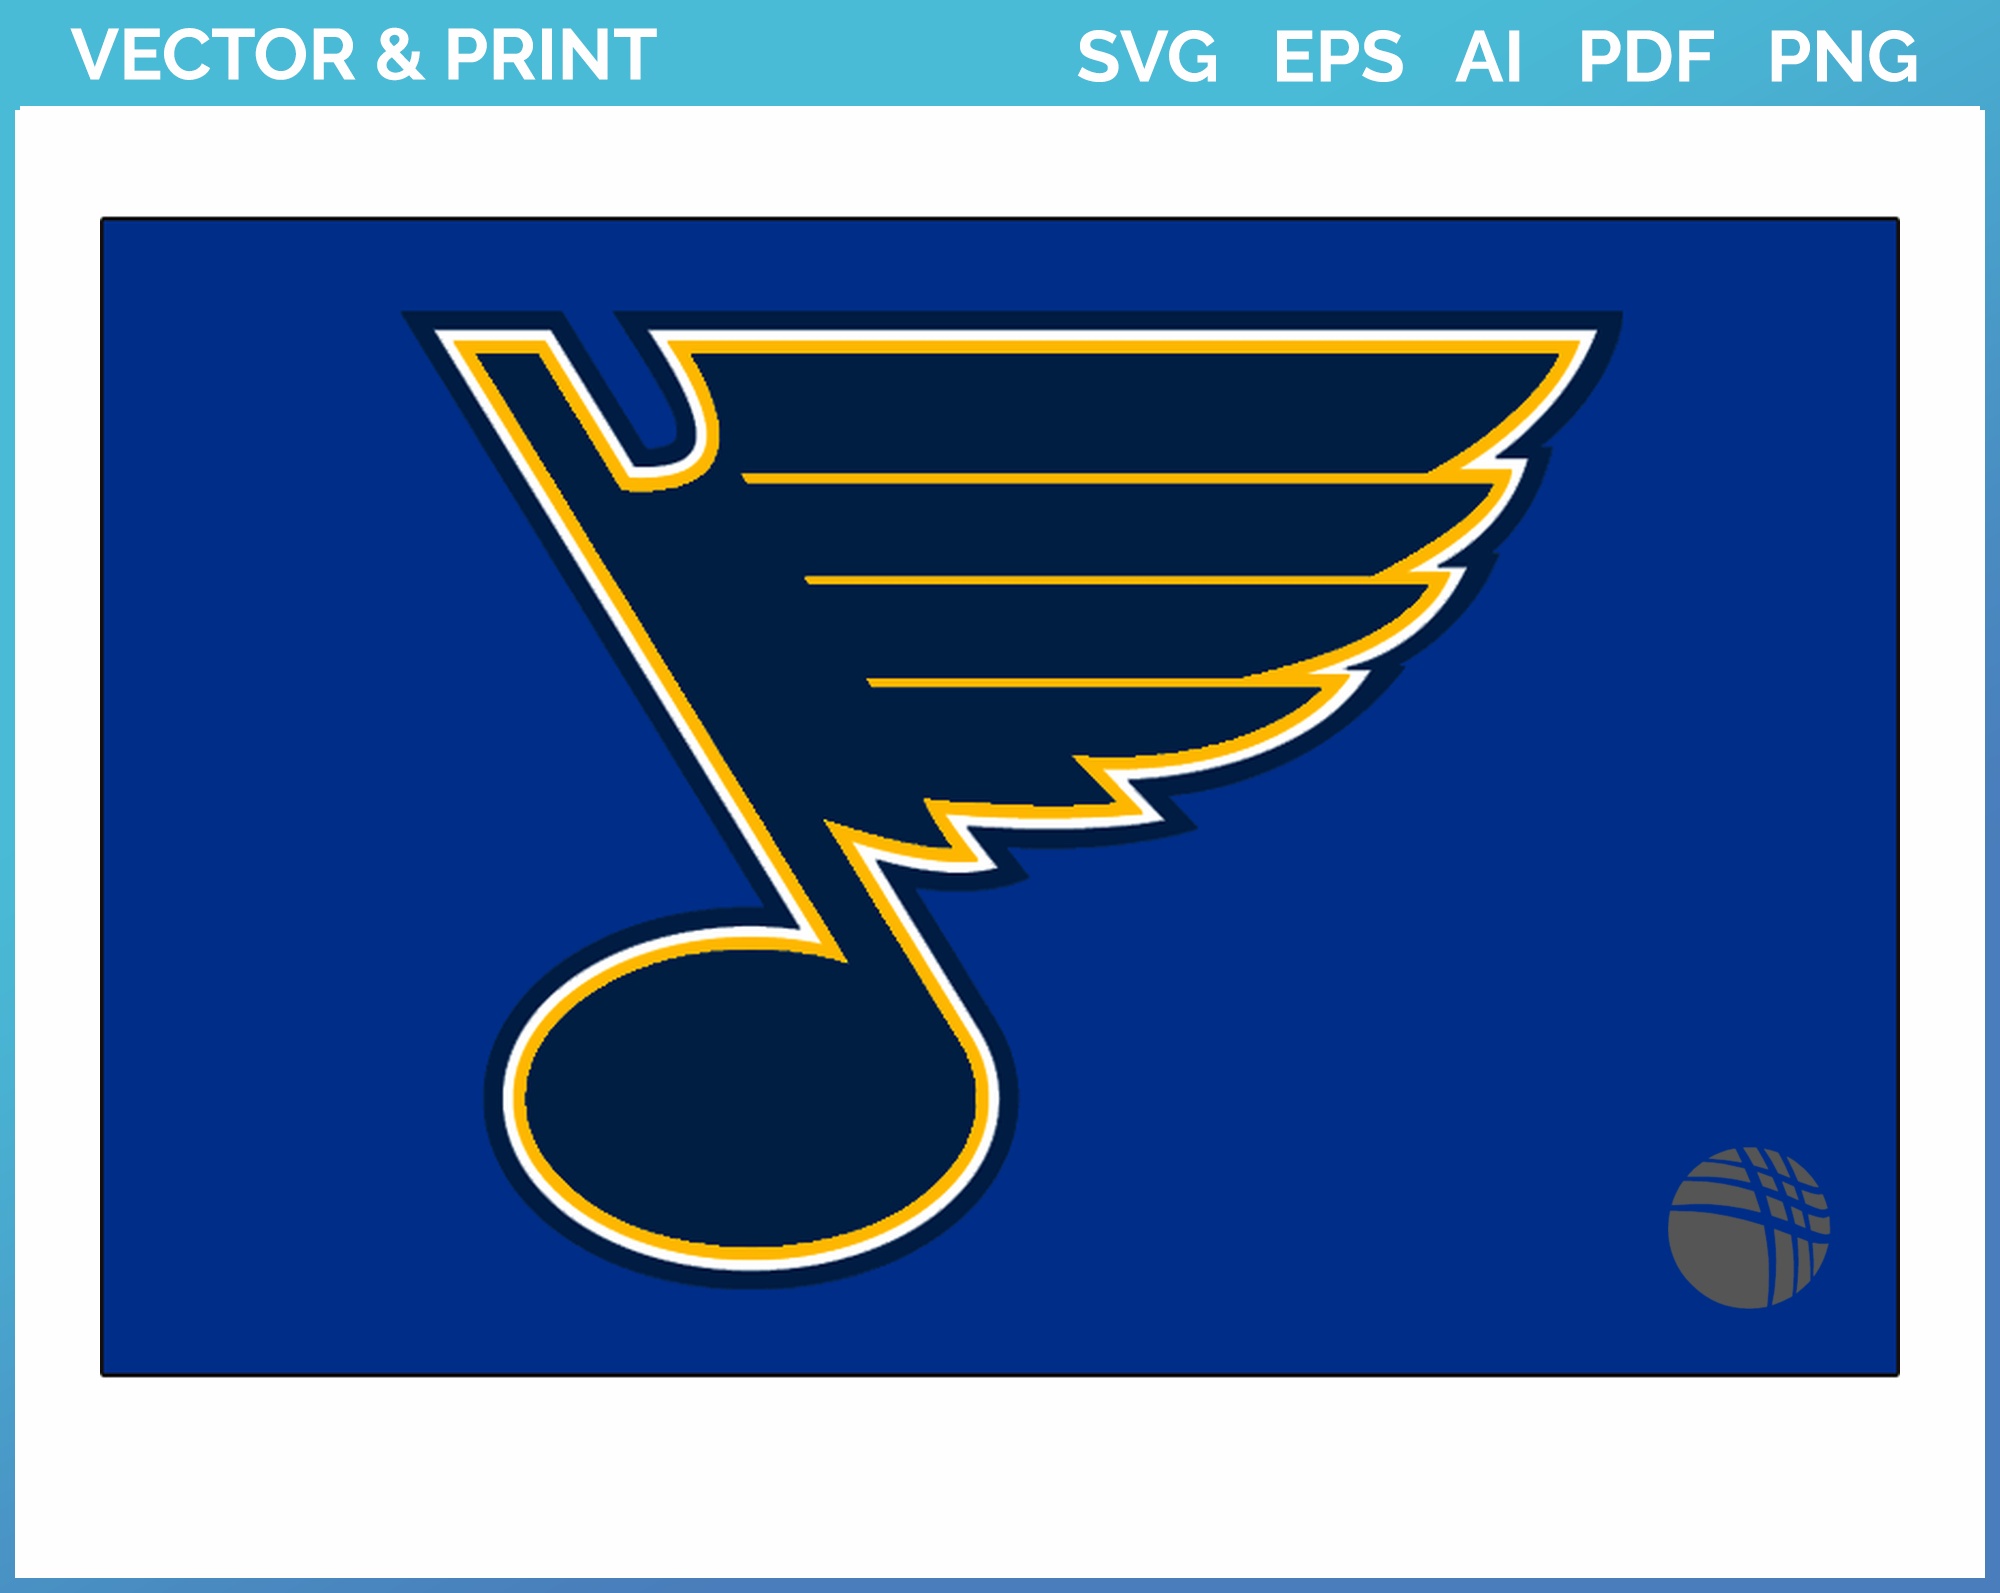 St. Louis Blues Alternate Logo SVG - Free Sports Logo Downloads